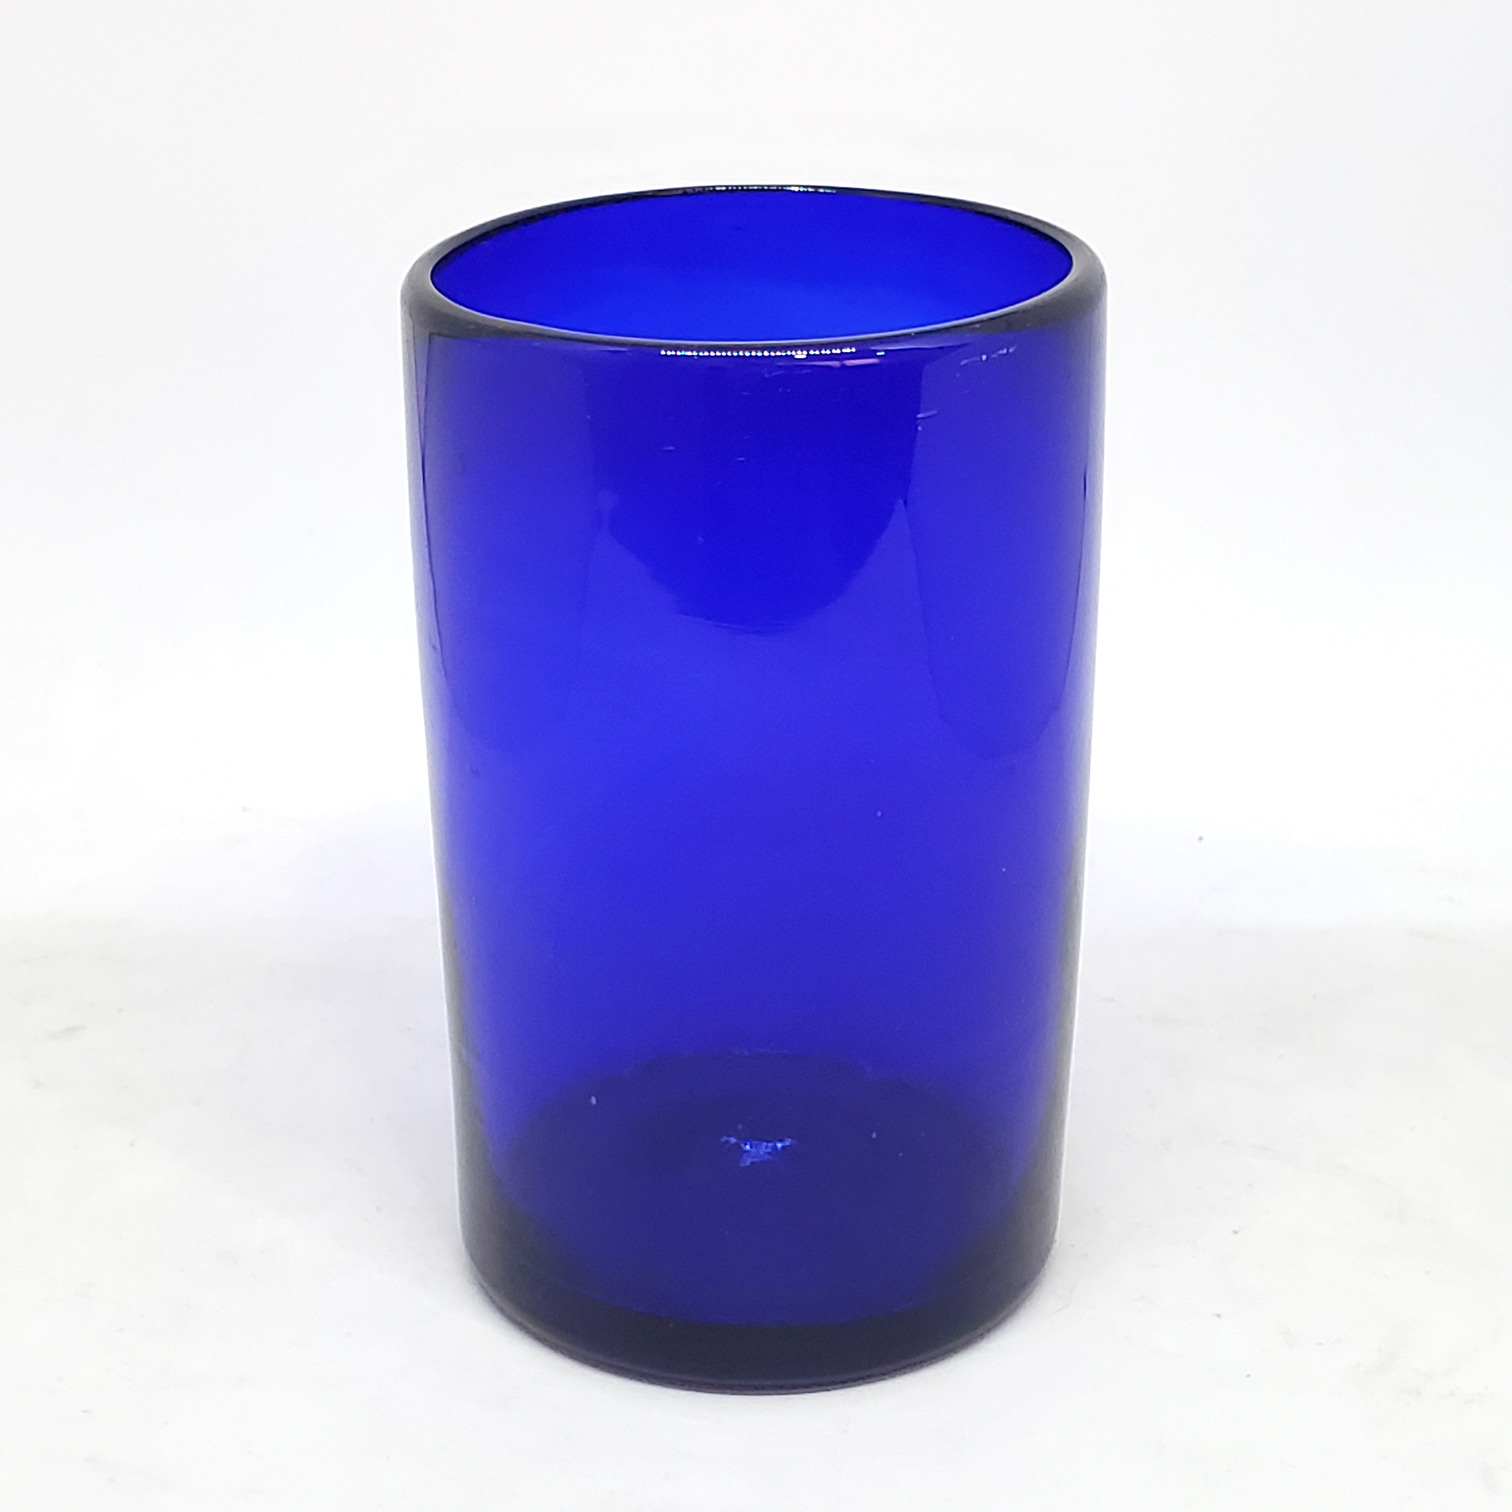 VIDRIO SOPLADO / Juego de 6 vasos grandes color azul cobalto, 14 oz, Vidrio Reciclado, Libre de Plomo y Toxinas